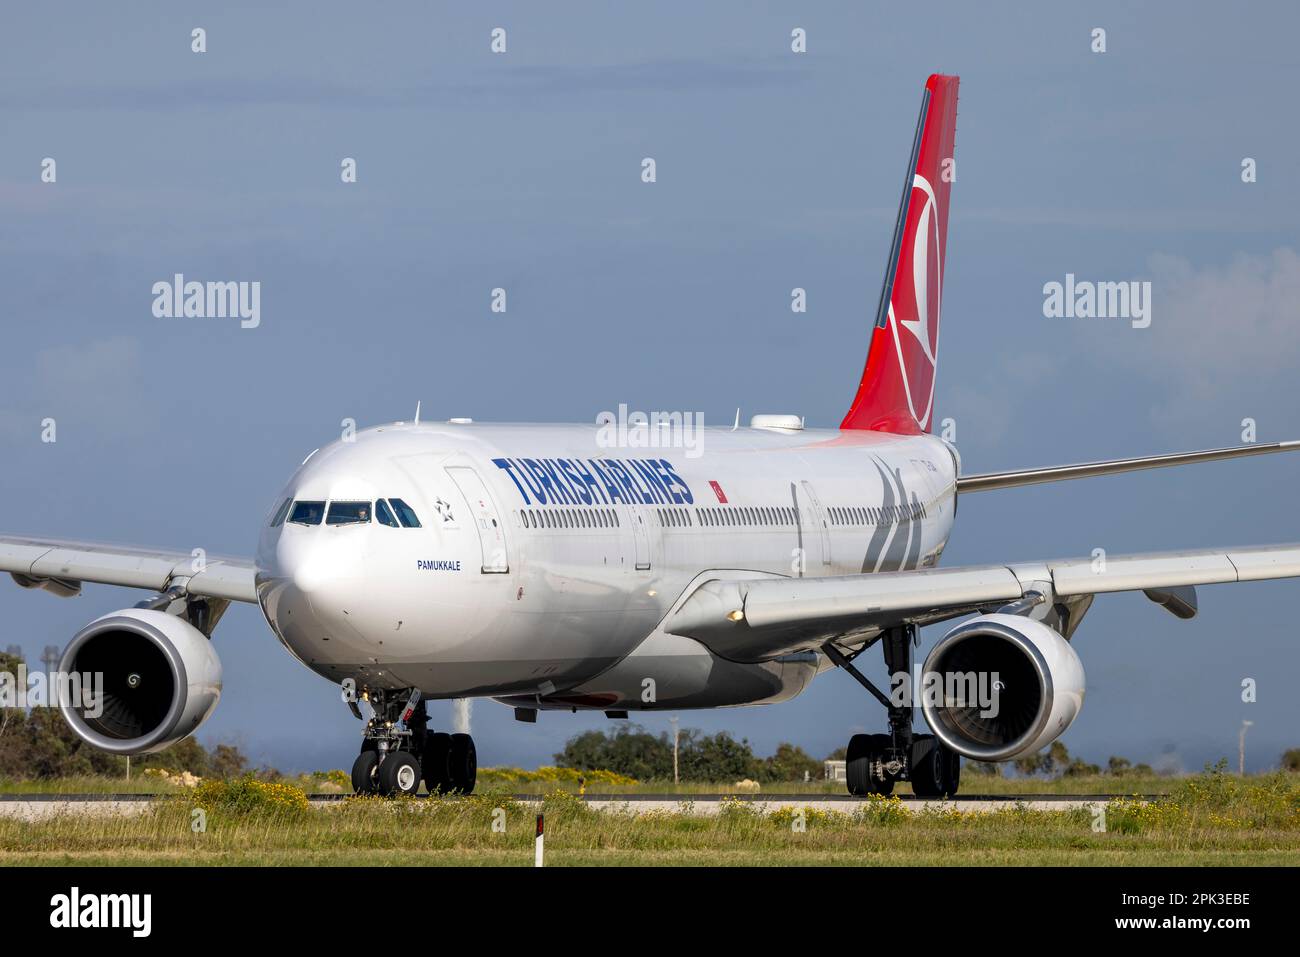 Turkish Airlines Airbus A330-303 (REG: TC-JOA) diverted to Malta on its way to Ouagadougou, Burkina Faso. Stock Photo